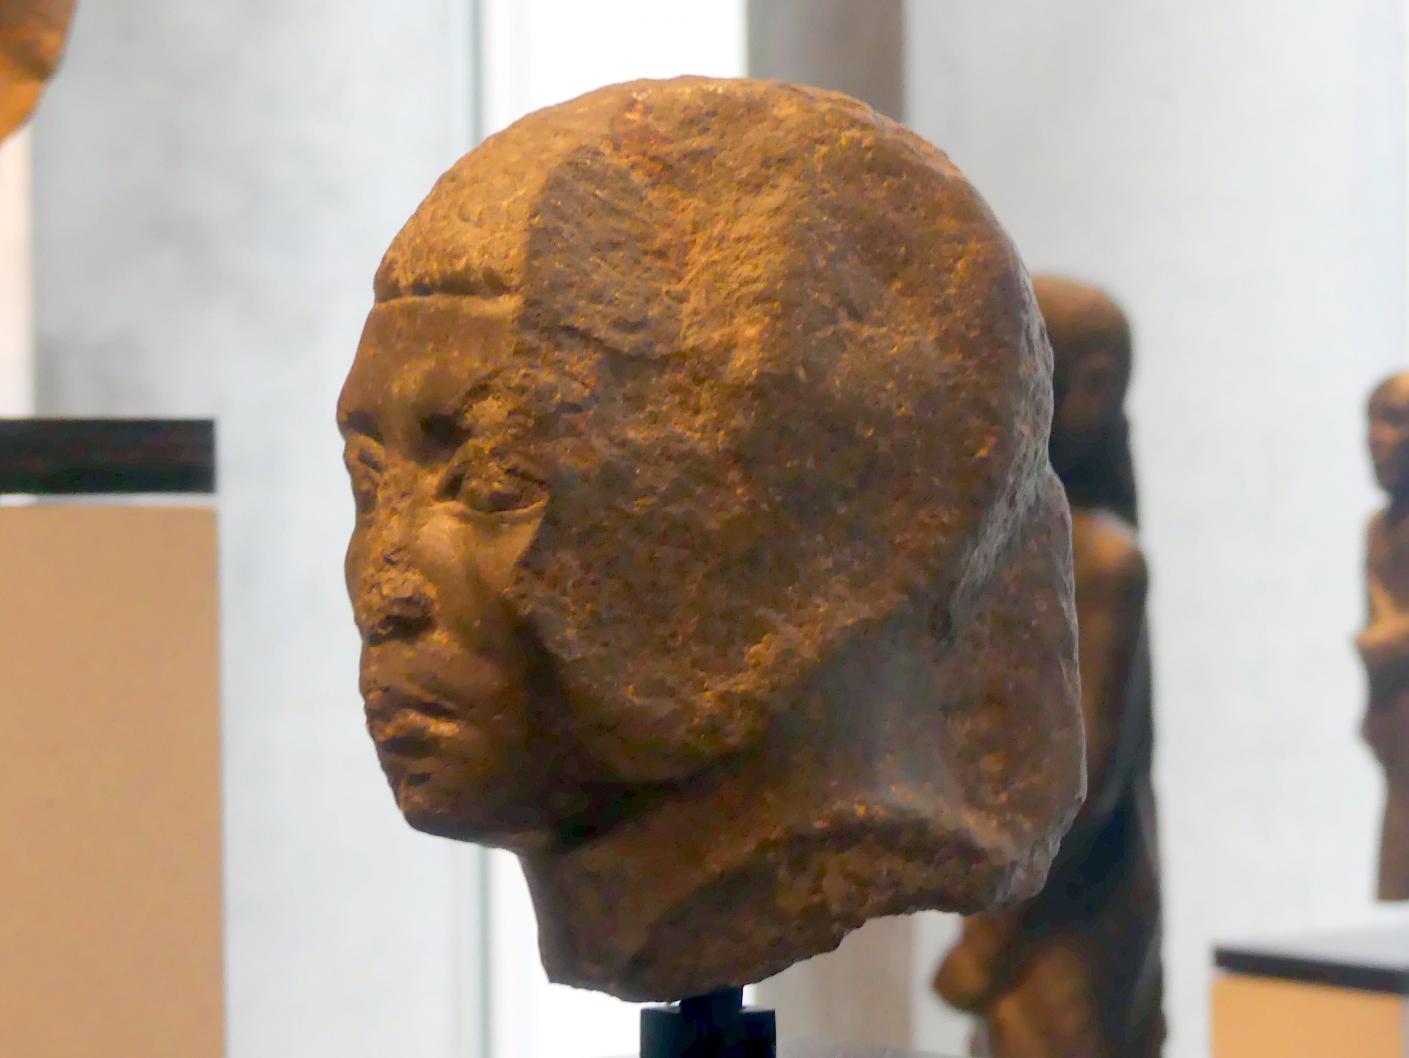 Kopf einer Priesterstatue, Ptolemäische Zeit, 400 v. Chr. - 1 n. Chr., 300 - 200 v. Chr., Bild 2/4